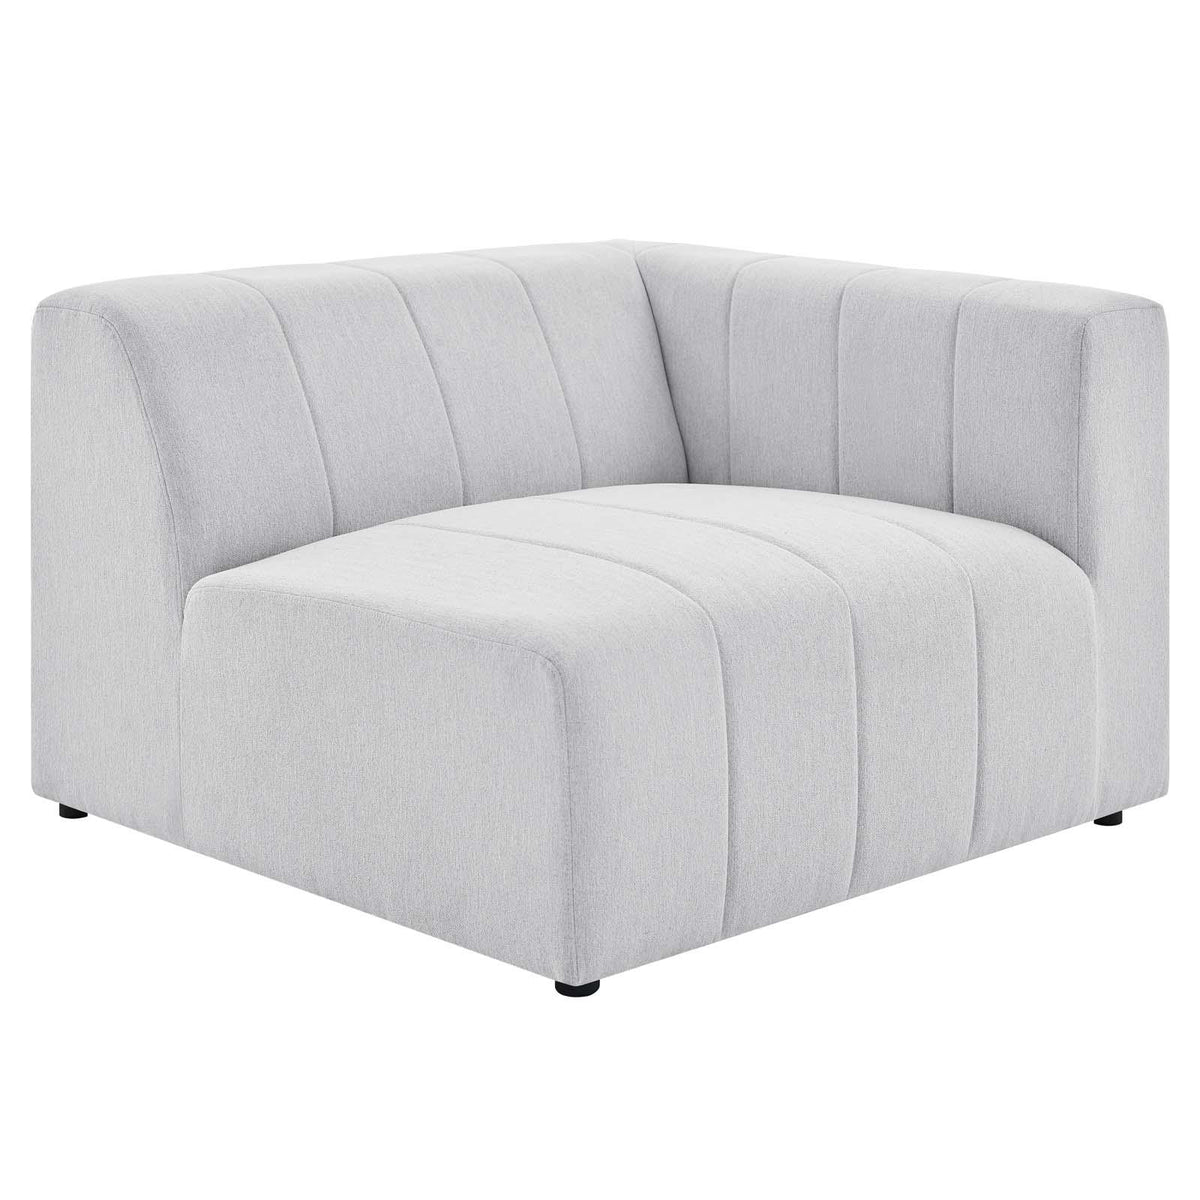 Modway Furniture Modern Bartlett Upholstered Fabric 6-Piece Sectional Sofa - EEI-4533